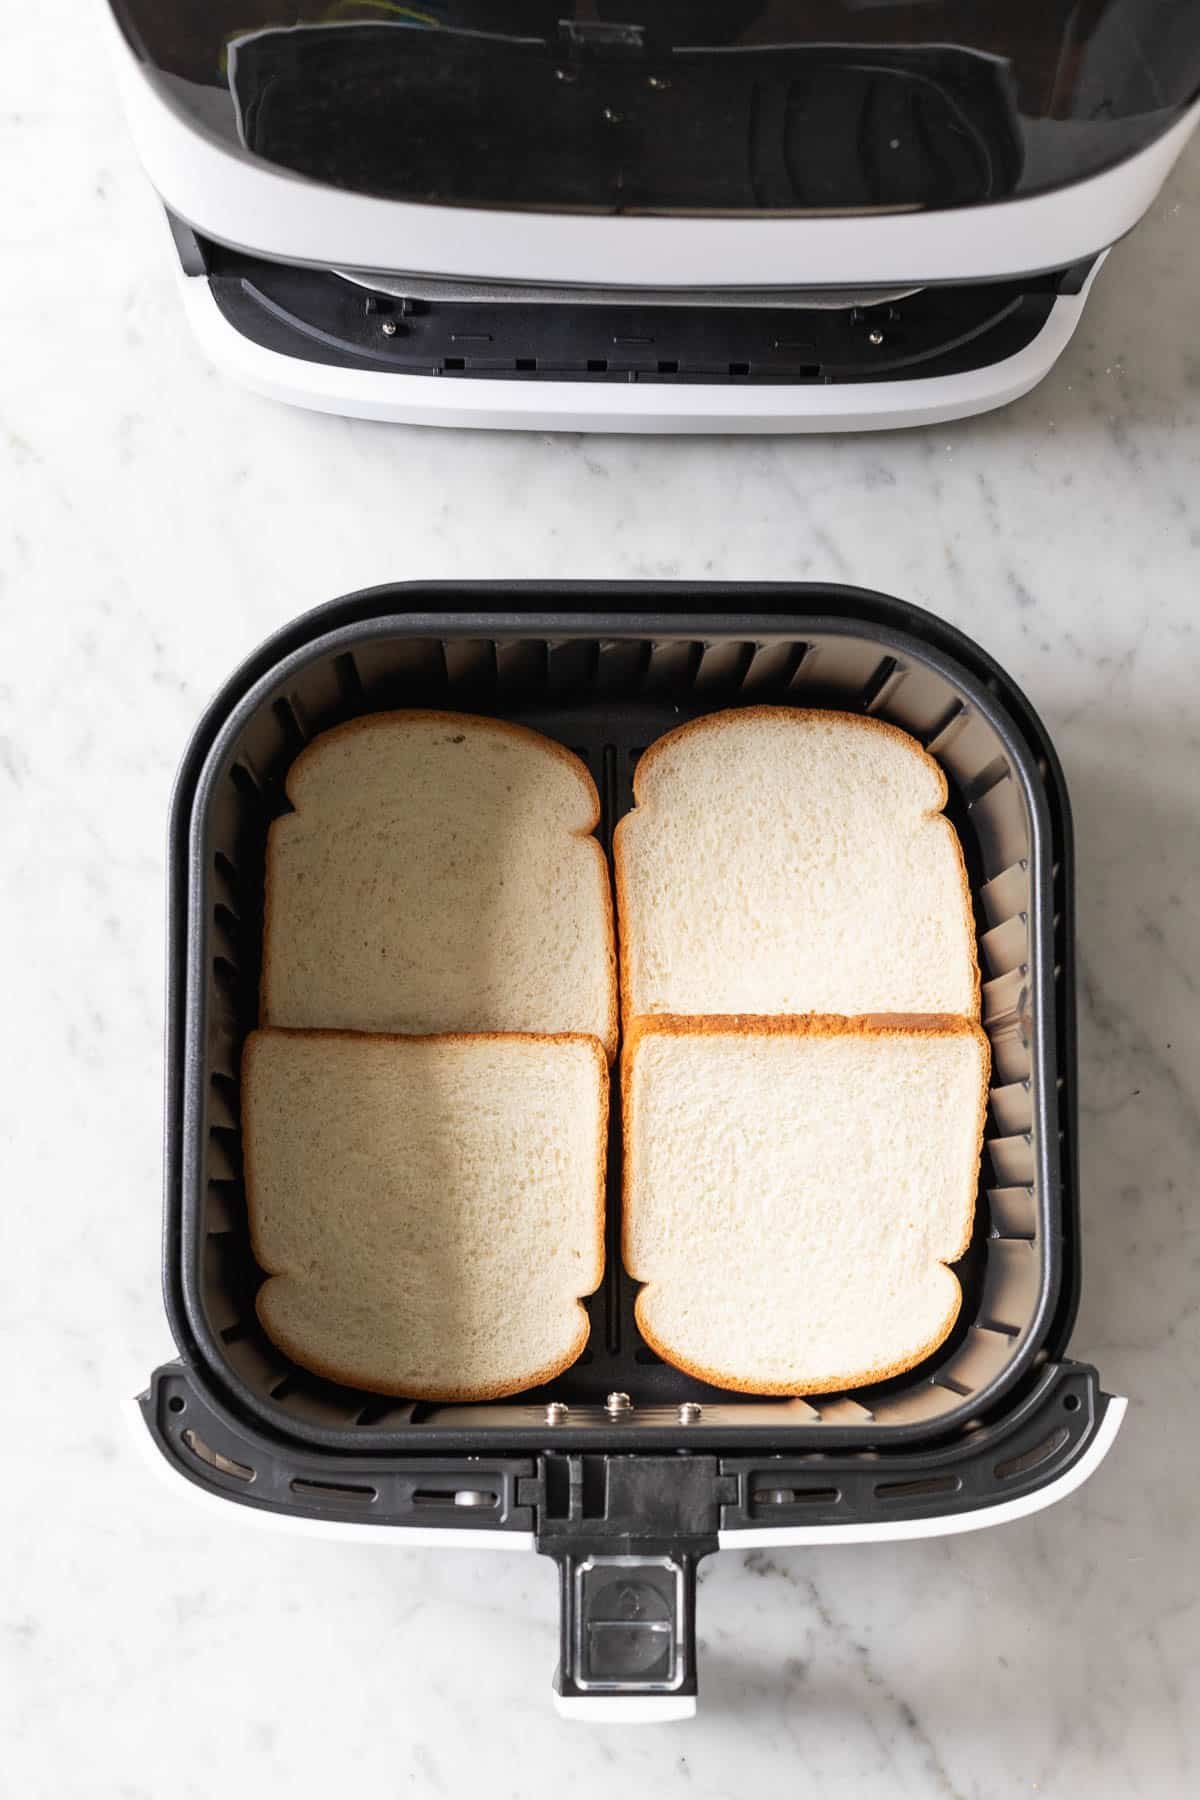 Bread in an Air Fryer basket.